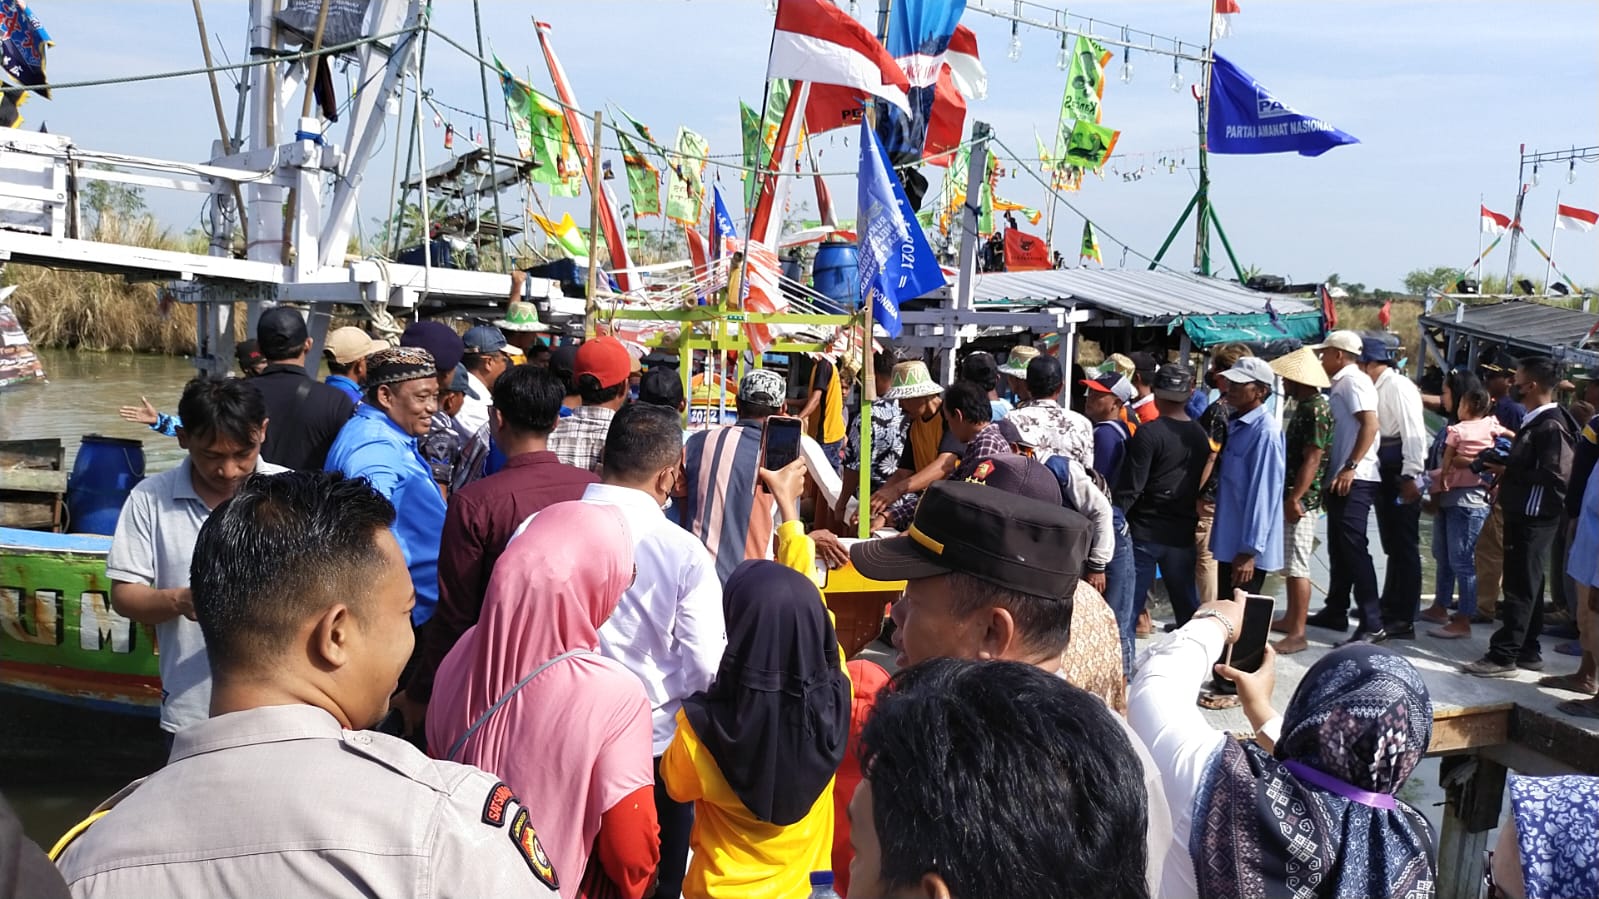 Sempat Terhenti, Anggota DPRD Brebes Apresiasi Tradisi Sedekah Laut di Pangaradan